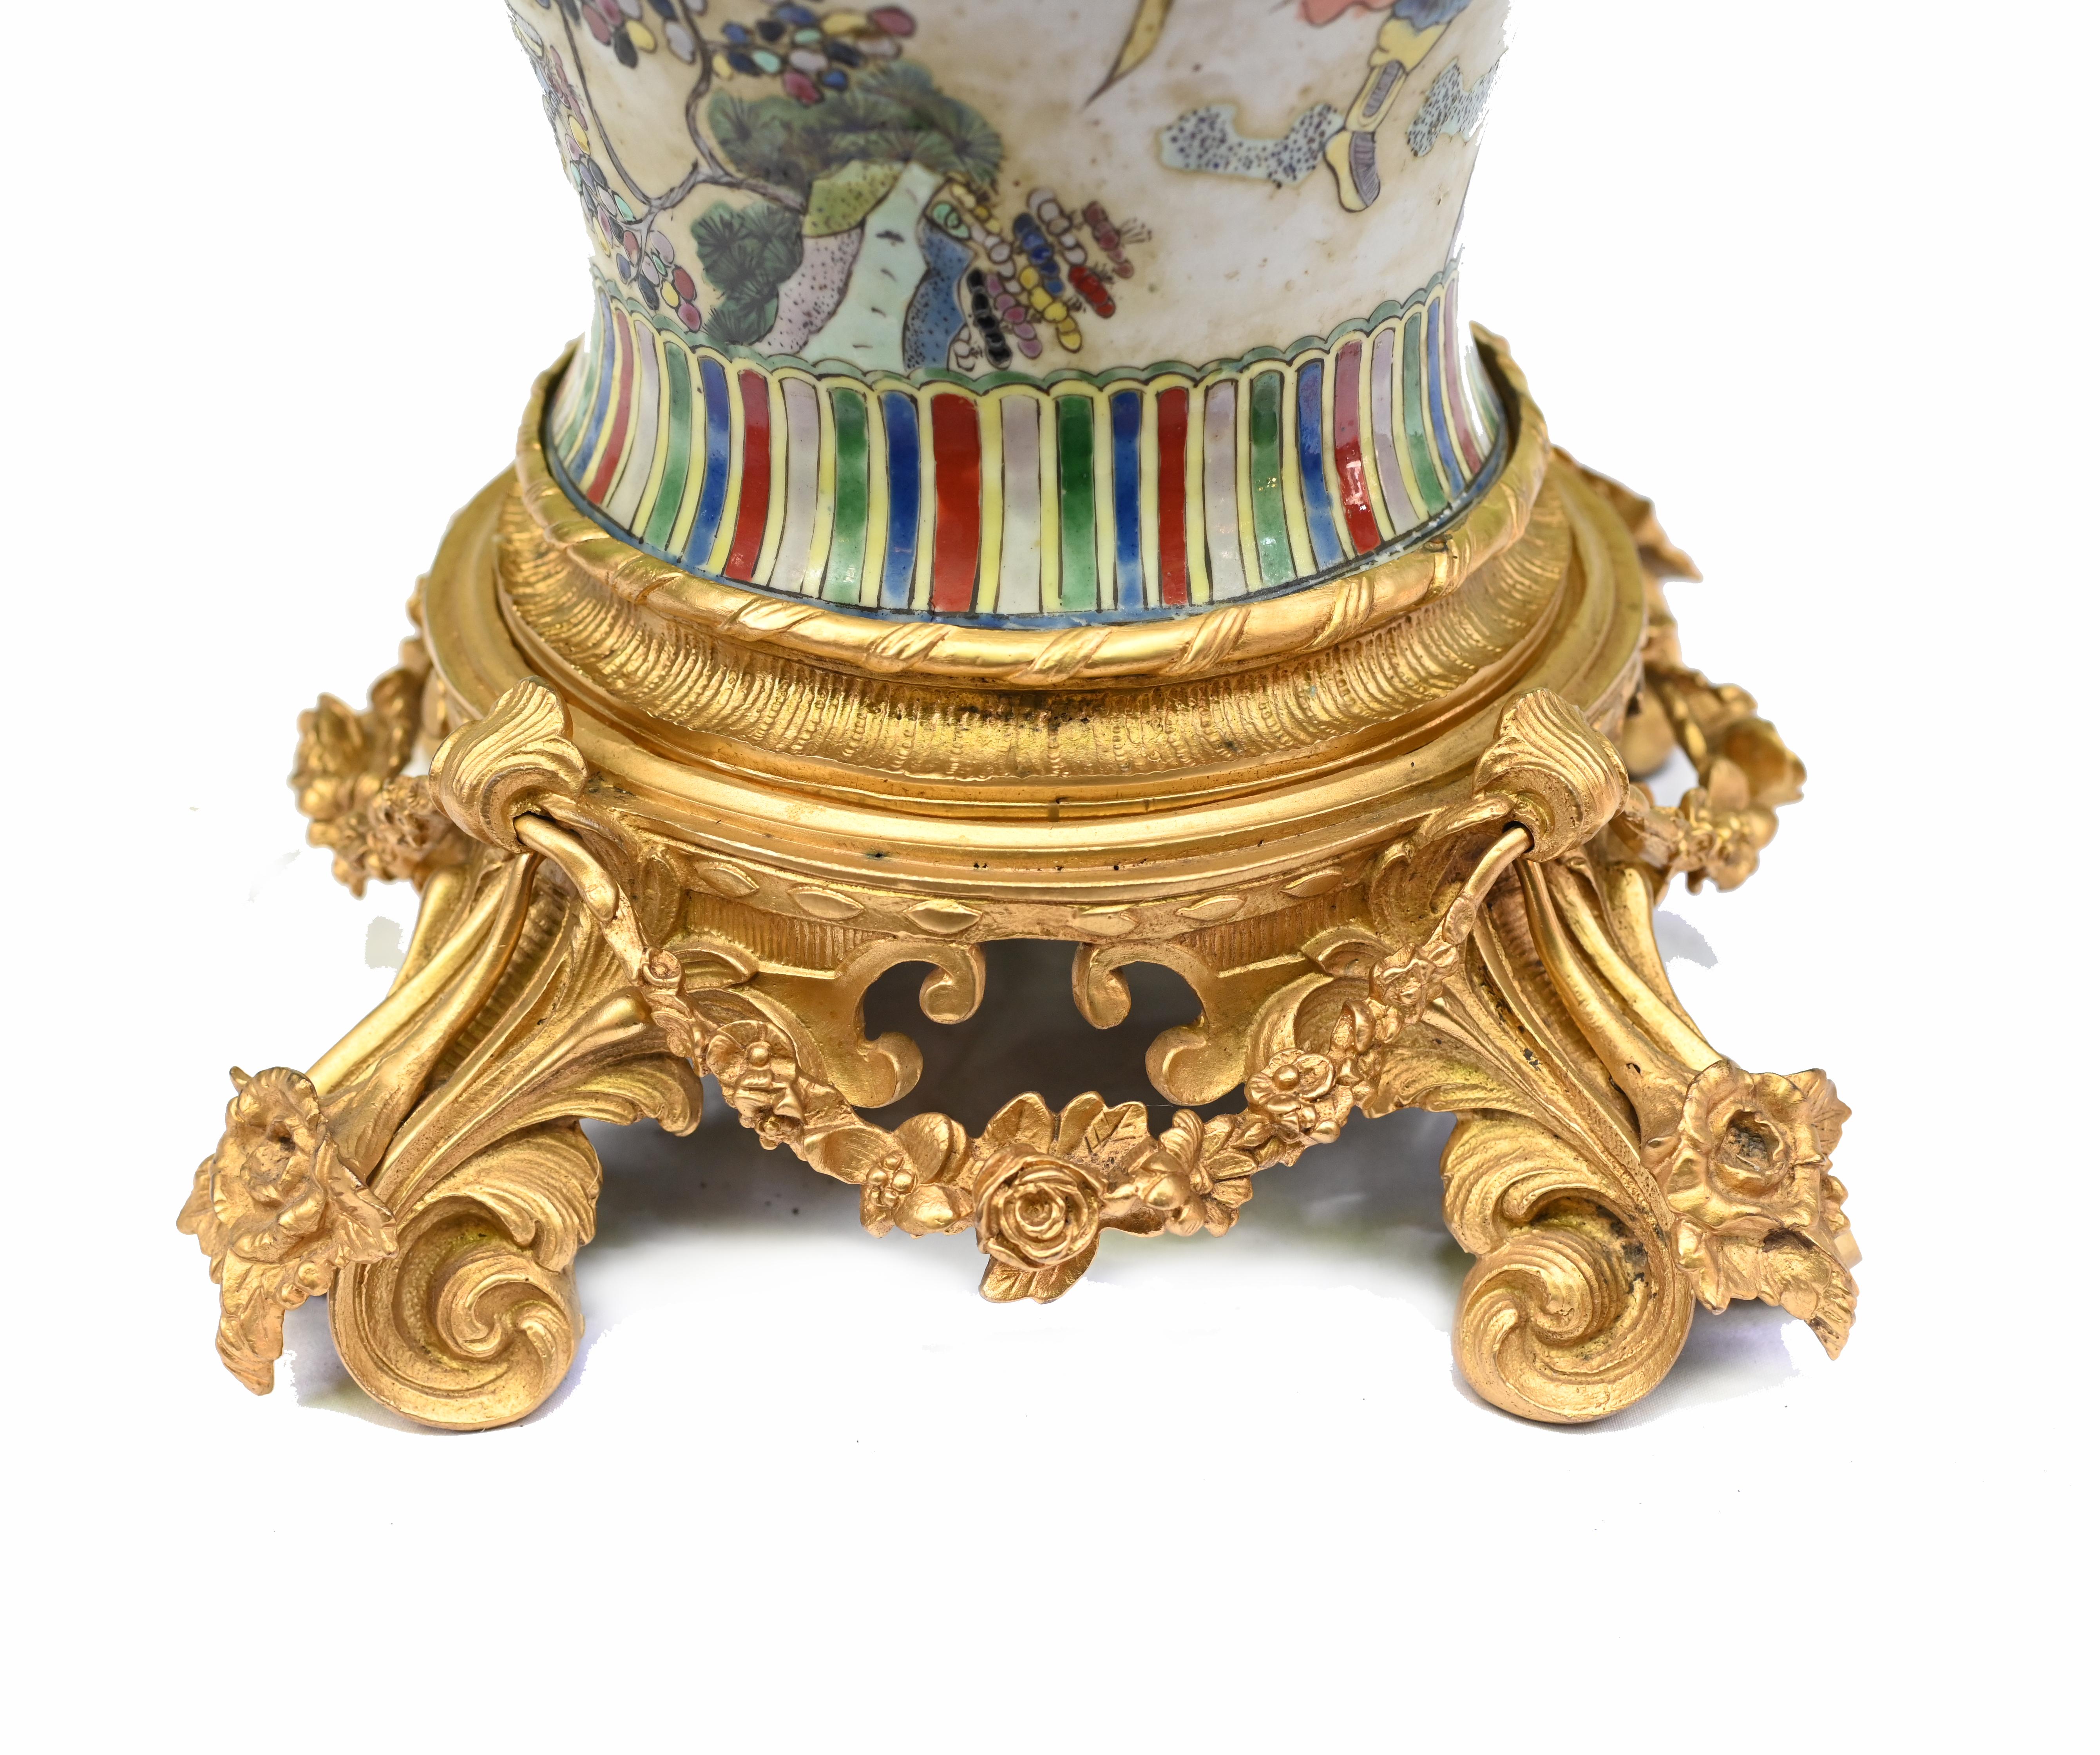 Elegants vases simples en porcelaine chinoise Qianlong avec montures en bronze doré français
Il était courant que ces vases soient adaptés aux marchés français et anglais avec des montures en bronze doré.
Le bronze doré est très bien moulé et